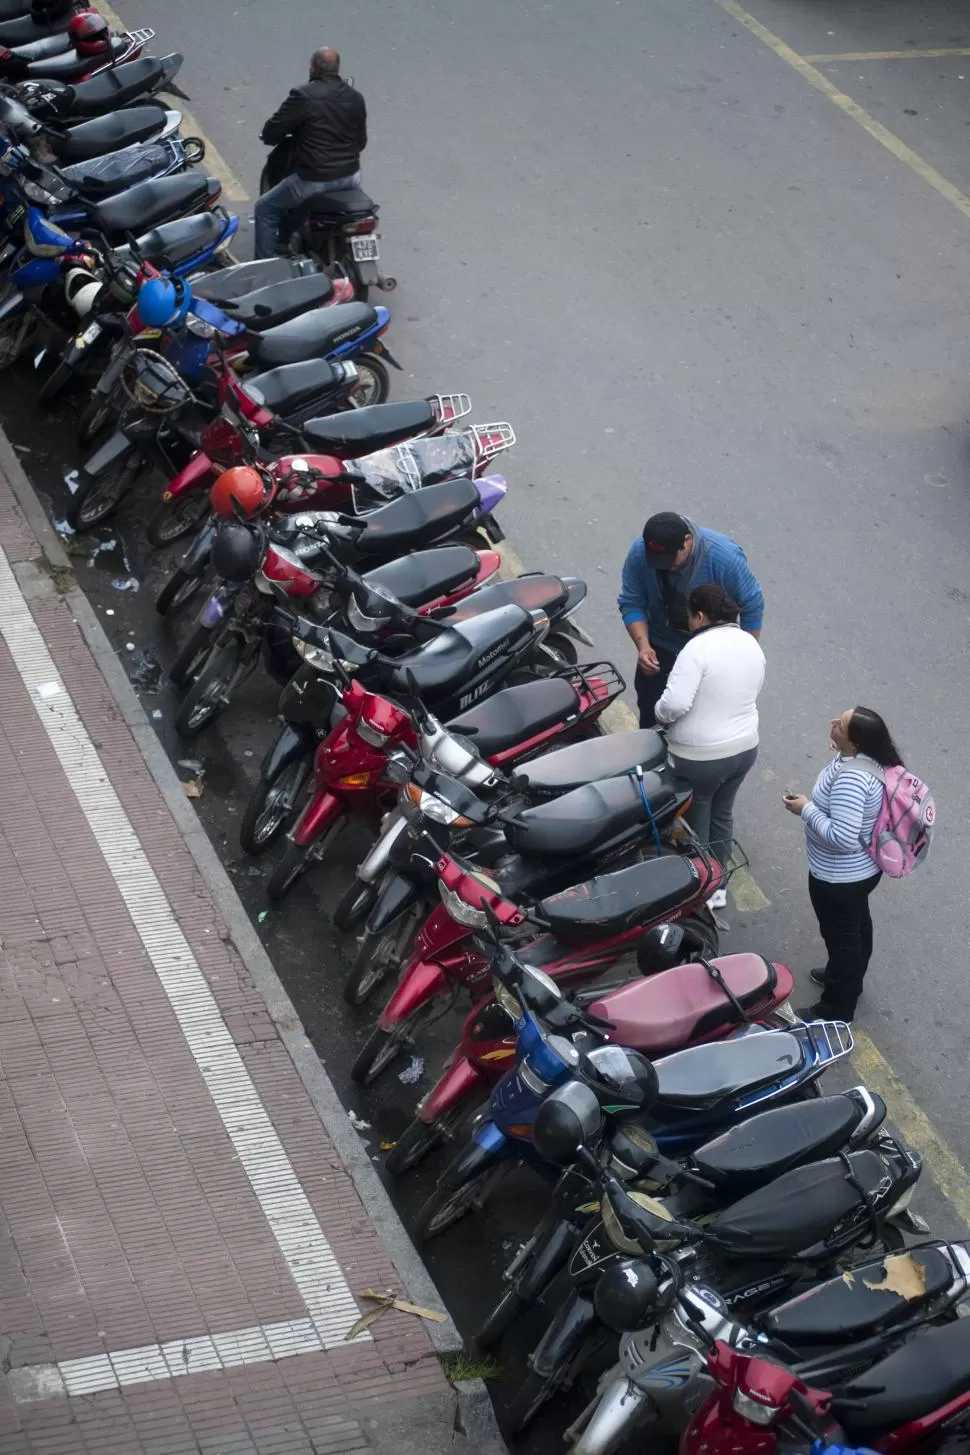 PASAJE PADILLA. Los Ovejero cuidan motos y autos; ruegan al municipio que les permitan seguir trabajando. LA GACETA / FOTO DE DIEGO ARÁOZ.